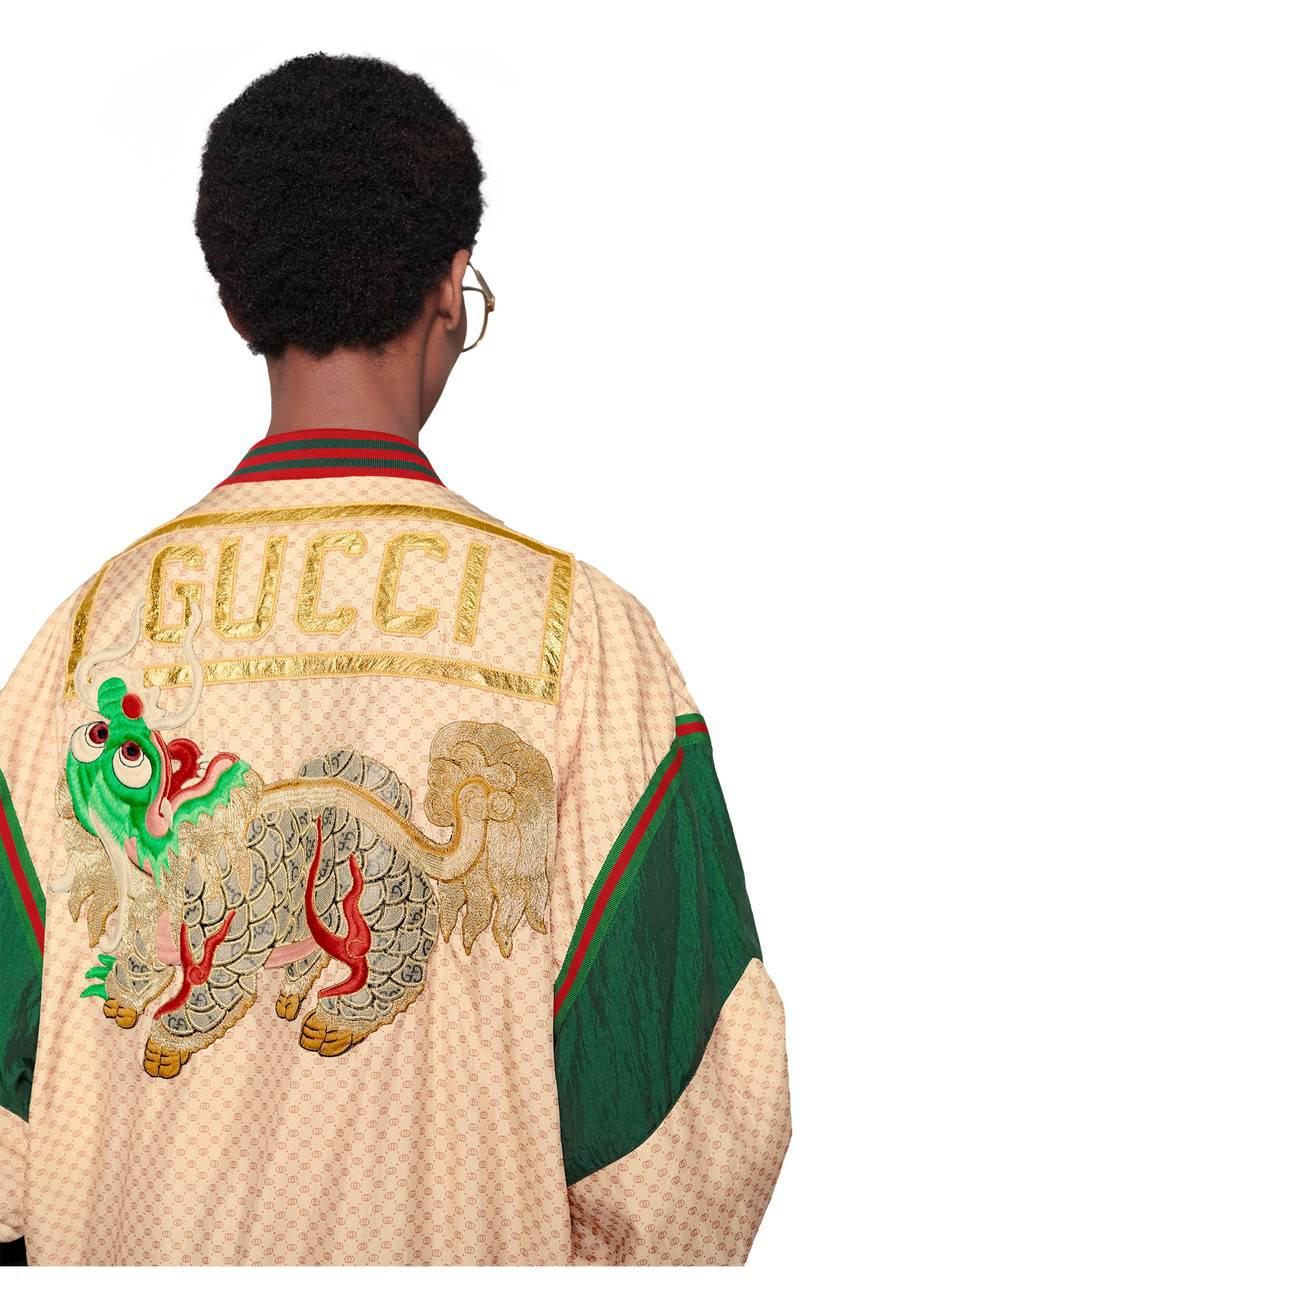 Gucci Dapper Dan Sequin Jacket